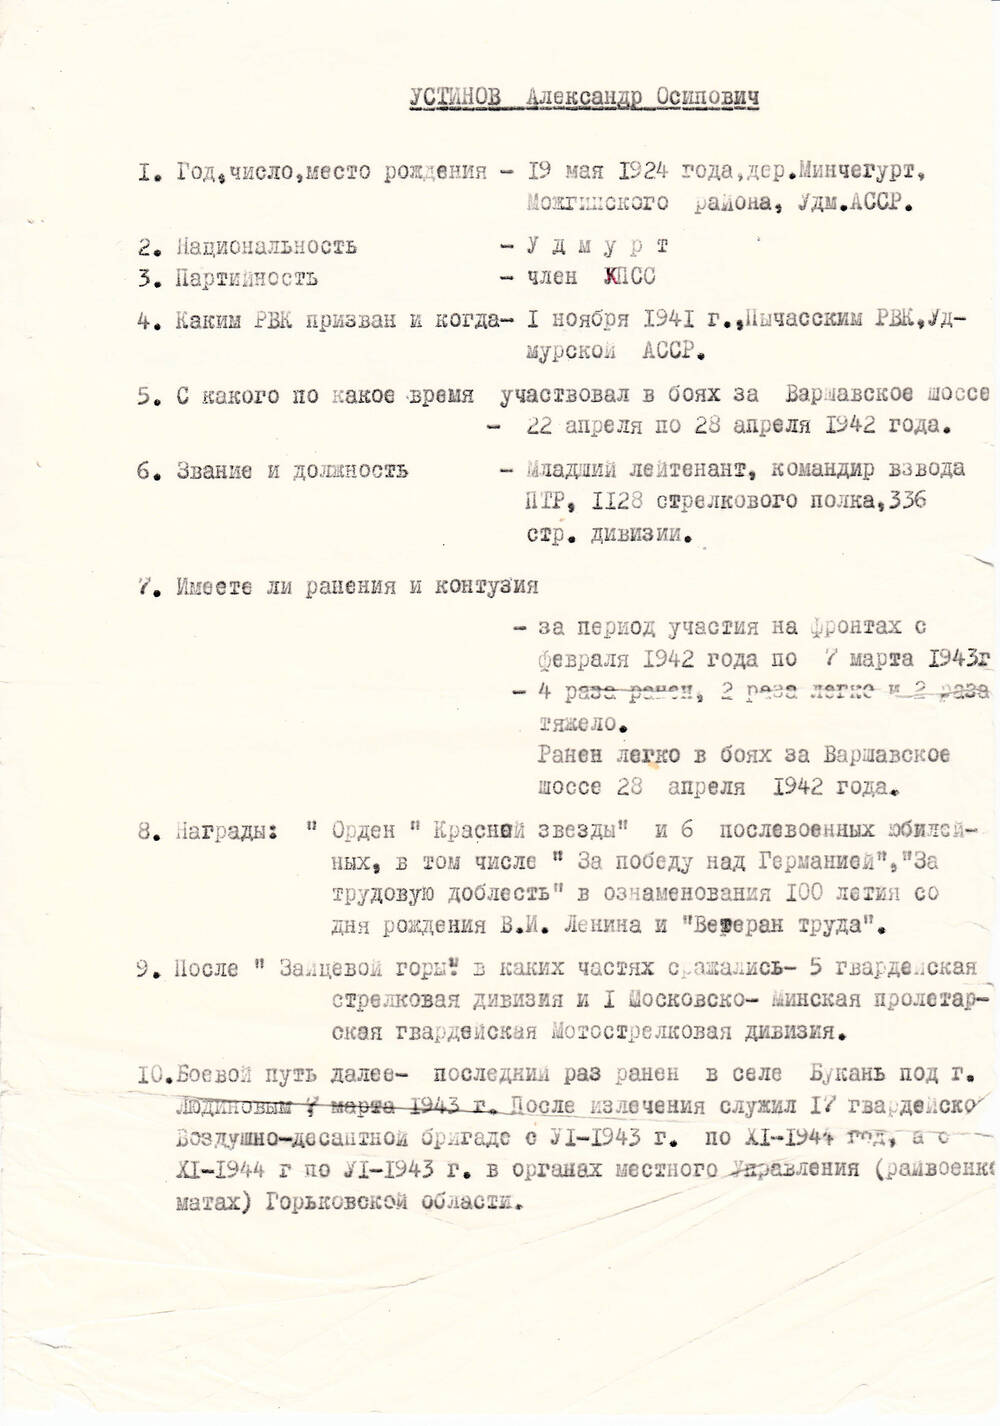 Анкета Устинова Александра Осиповича, ветерана Великой Отечественной войны 1941-1945 гг., с краткими биографическими данными.